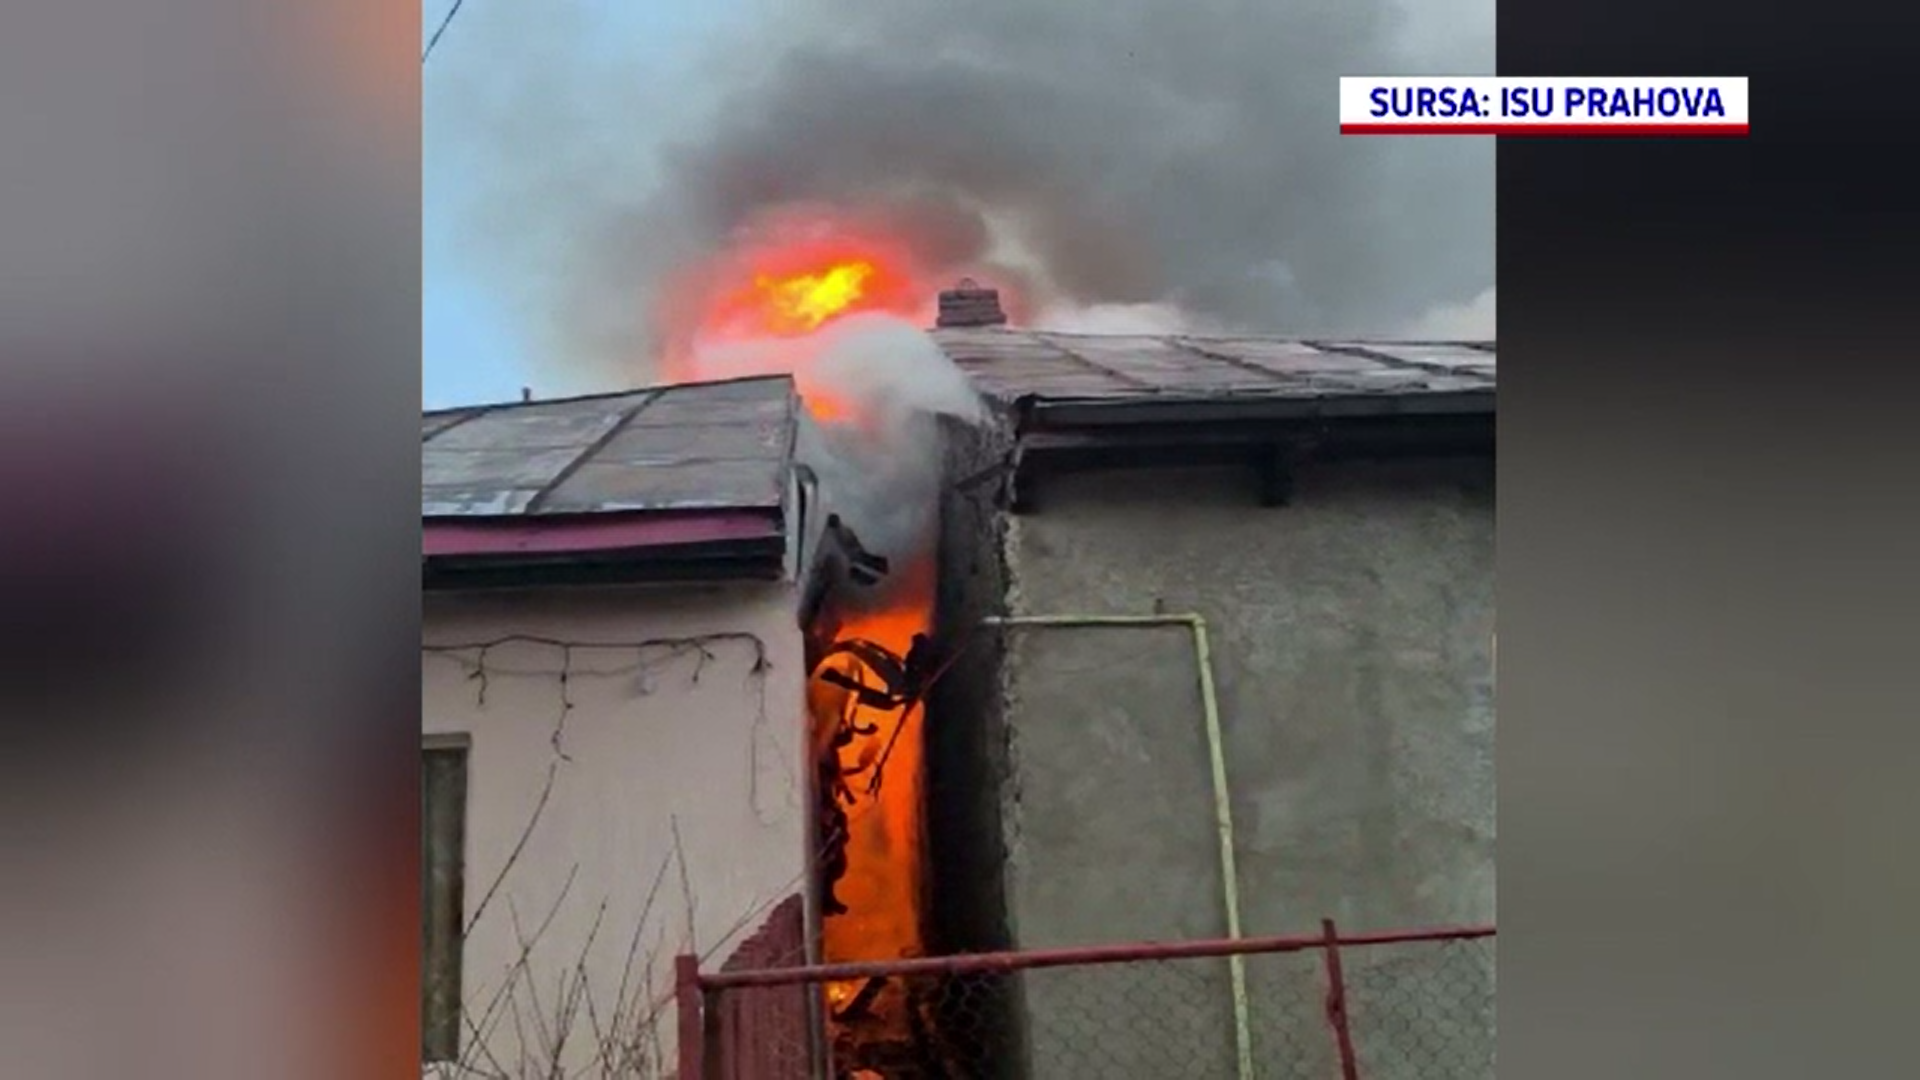 Două case din Băicoi, judeţul Prahova, au fost distruse de un incendiu pornit de la o afumătoare